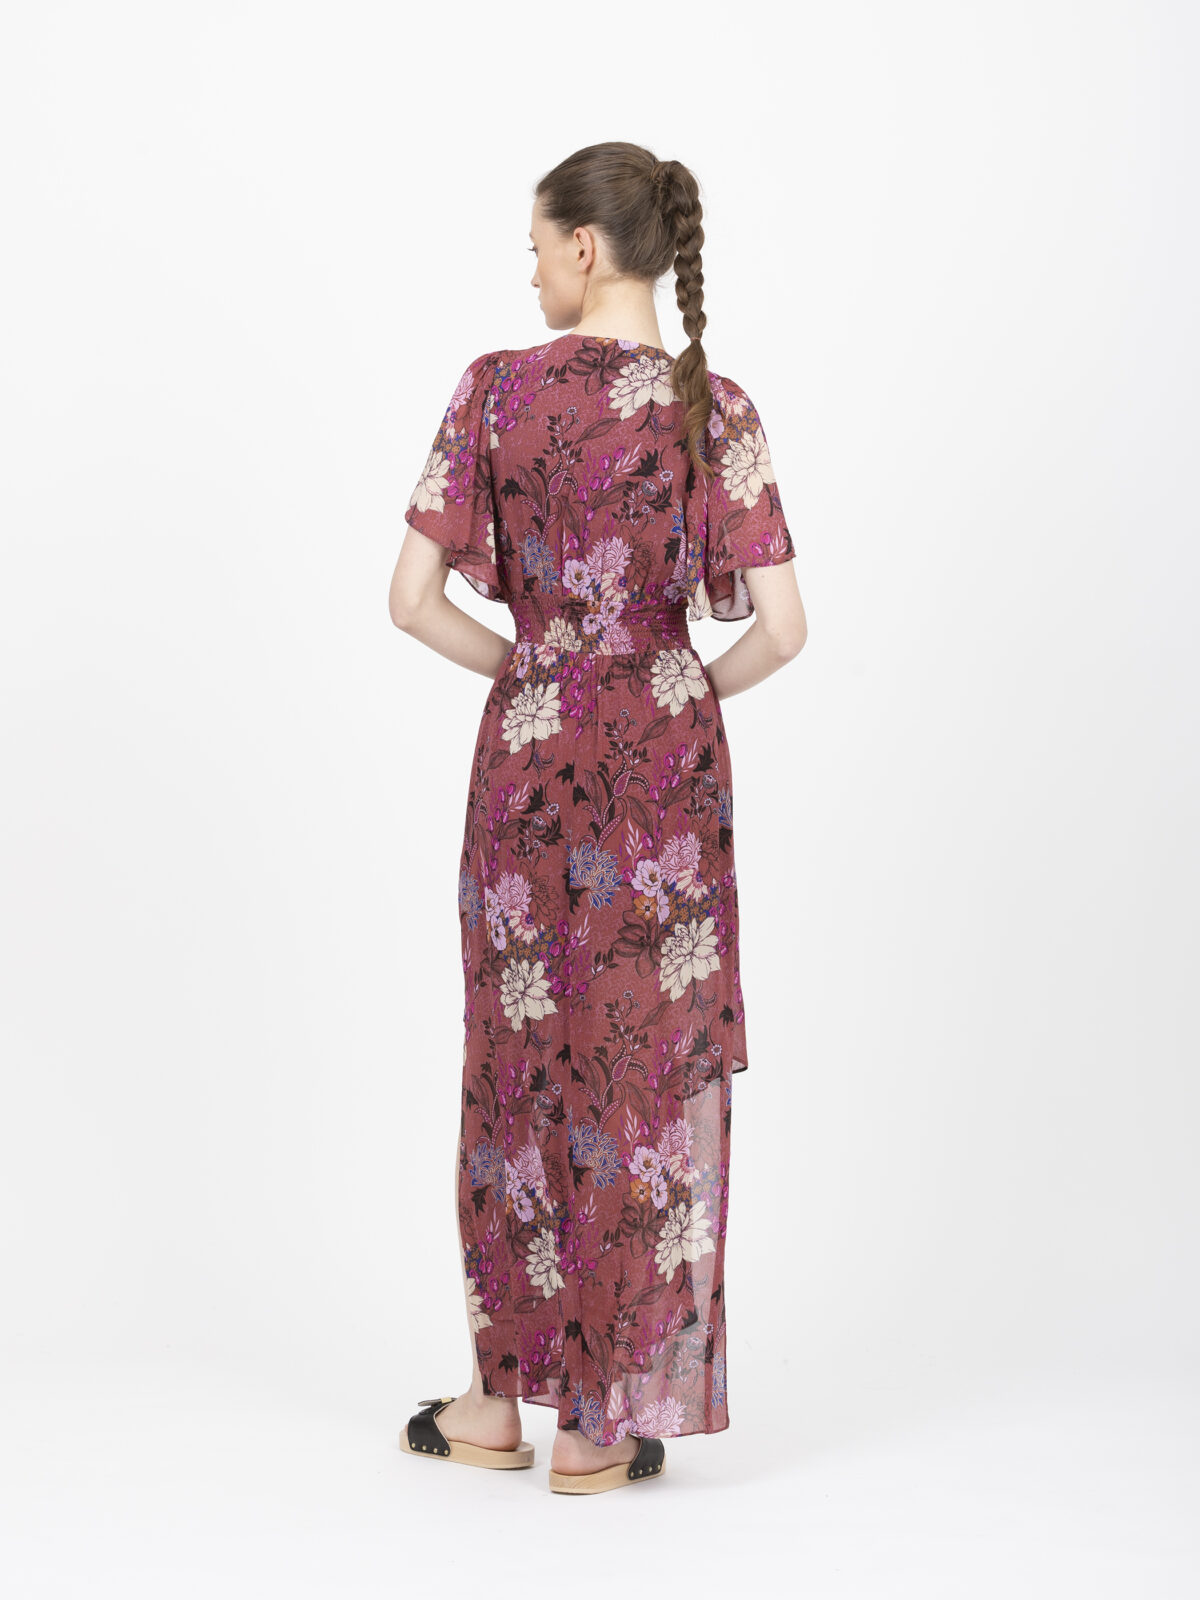 alia-plum-dress-berenice-matchbox-athens-boutique-shop-online